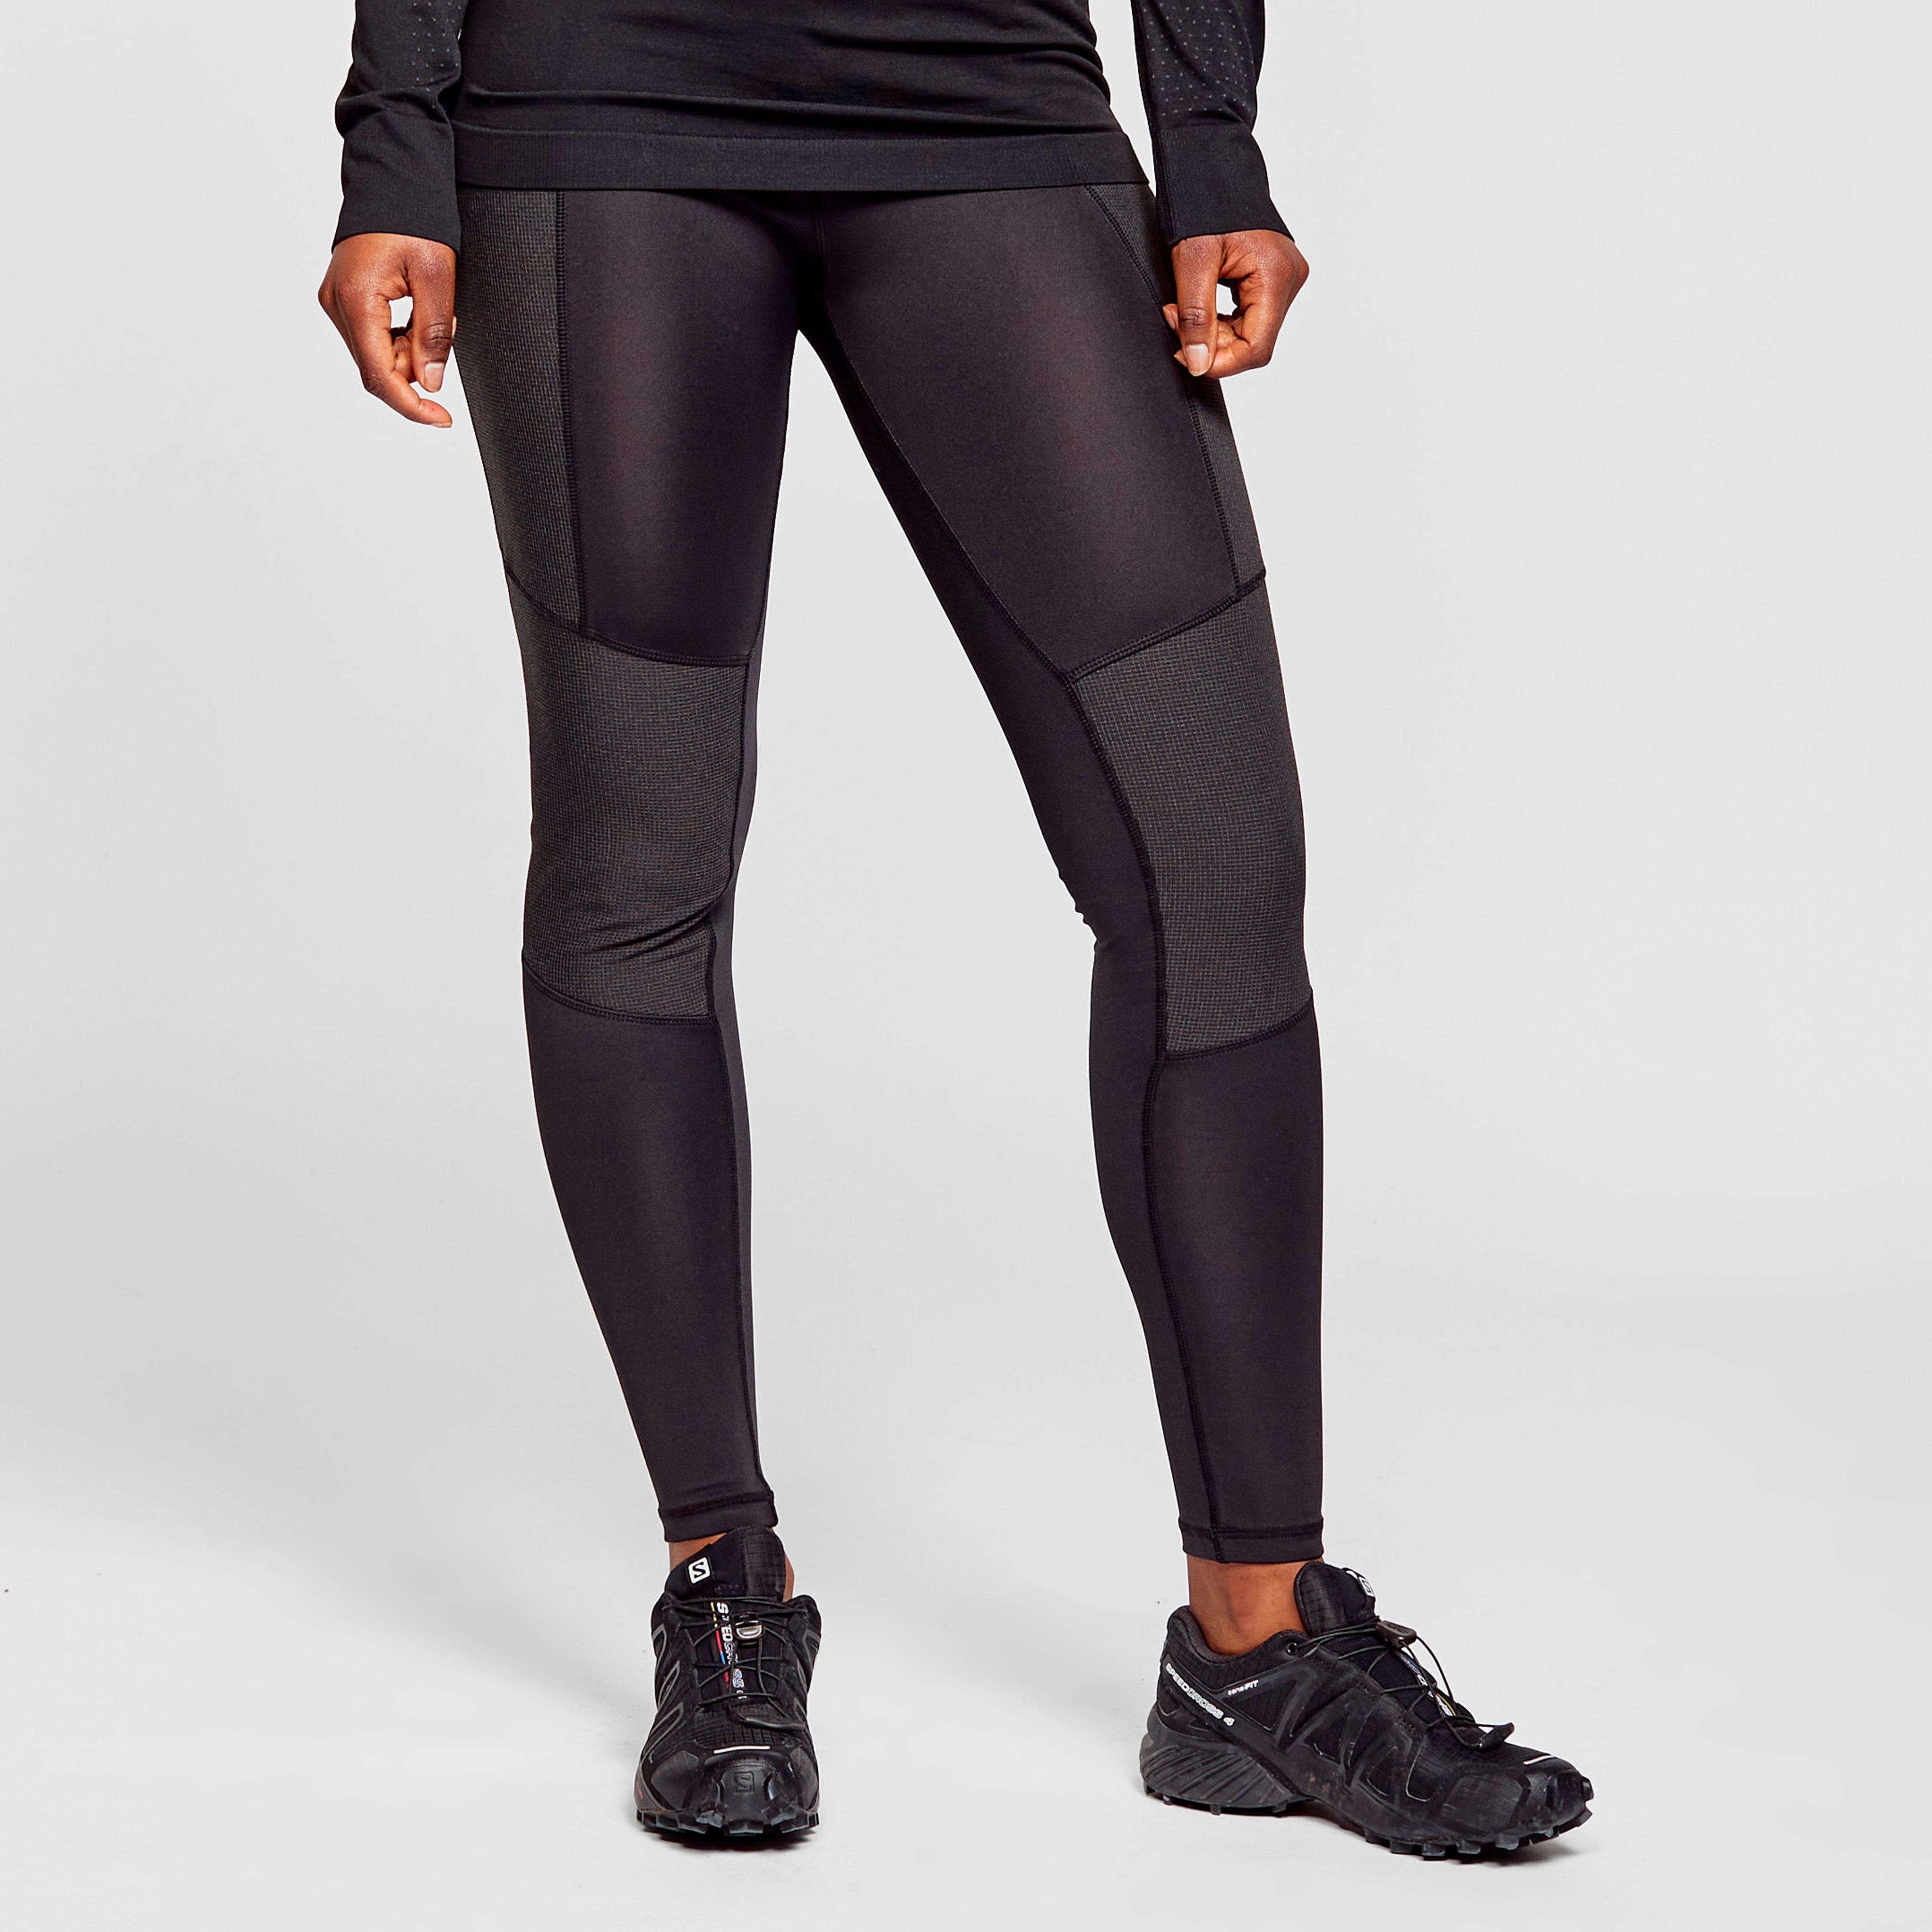 Oex Womens Technical Legging - Black/legging  Black/legging